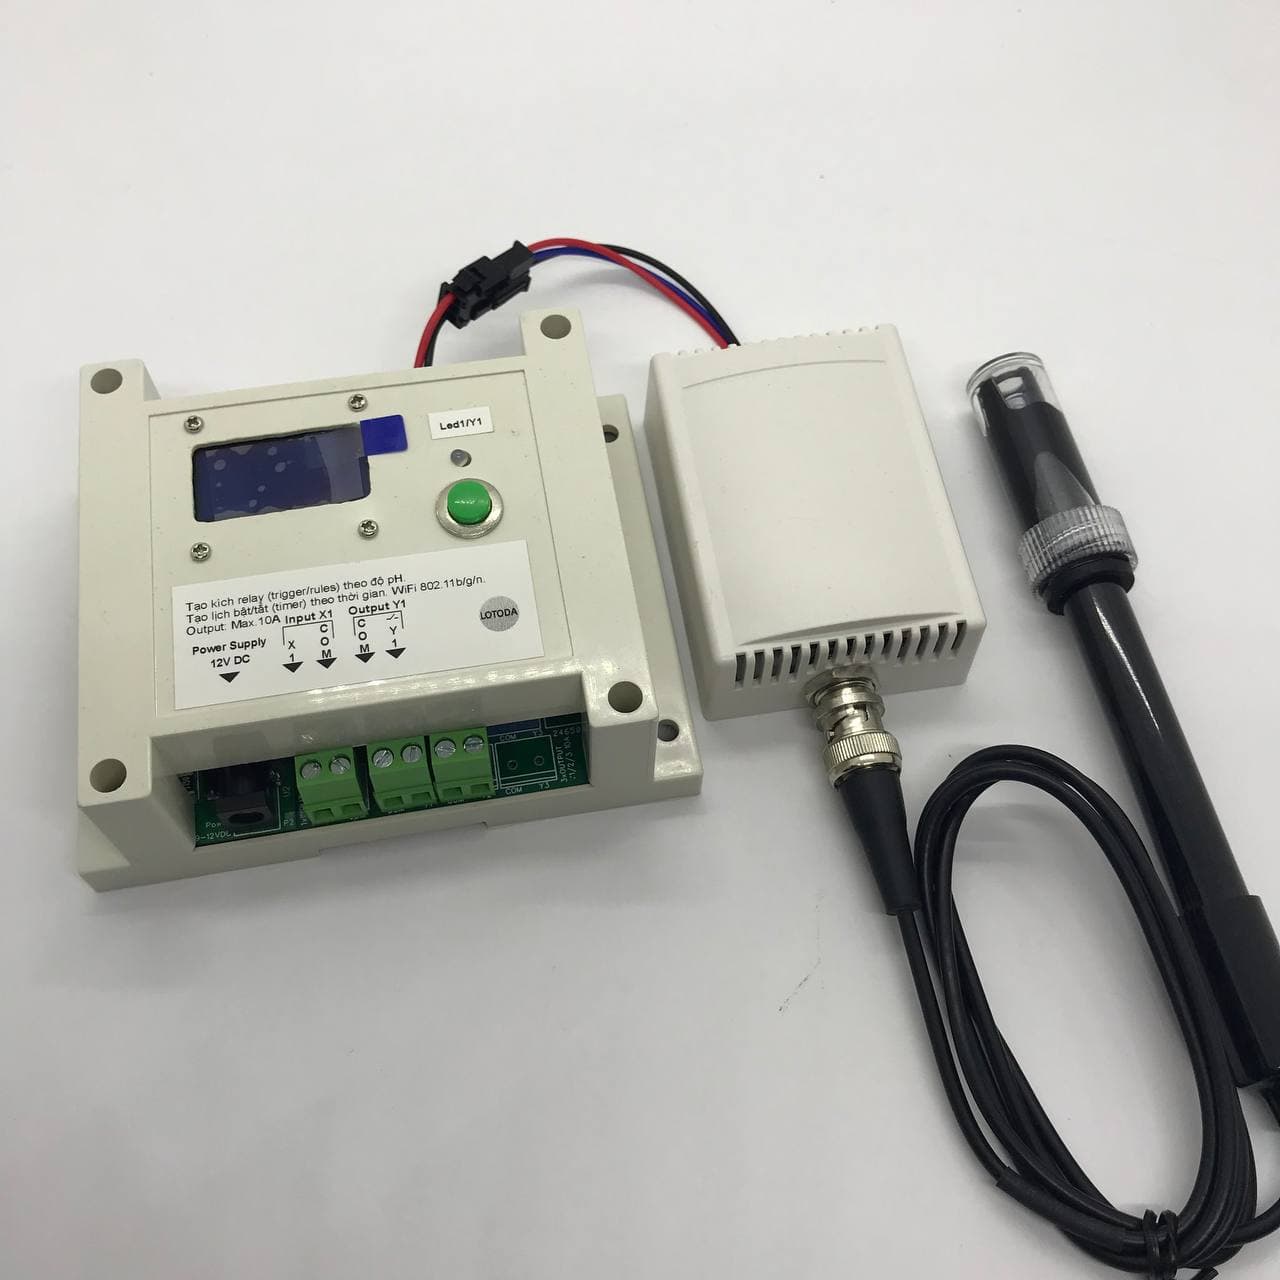 Thiết Bị IoT LOTODA WiFi Điều Khiển Tự Động 1 Kênh Output DC/AC & 1 Sensor pH với hiển thị LCD